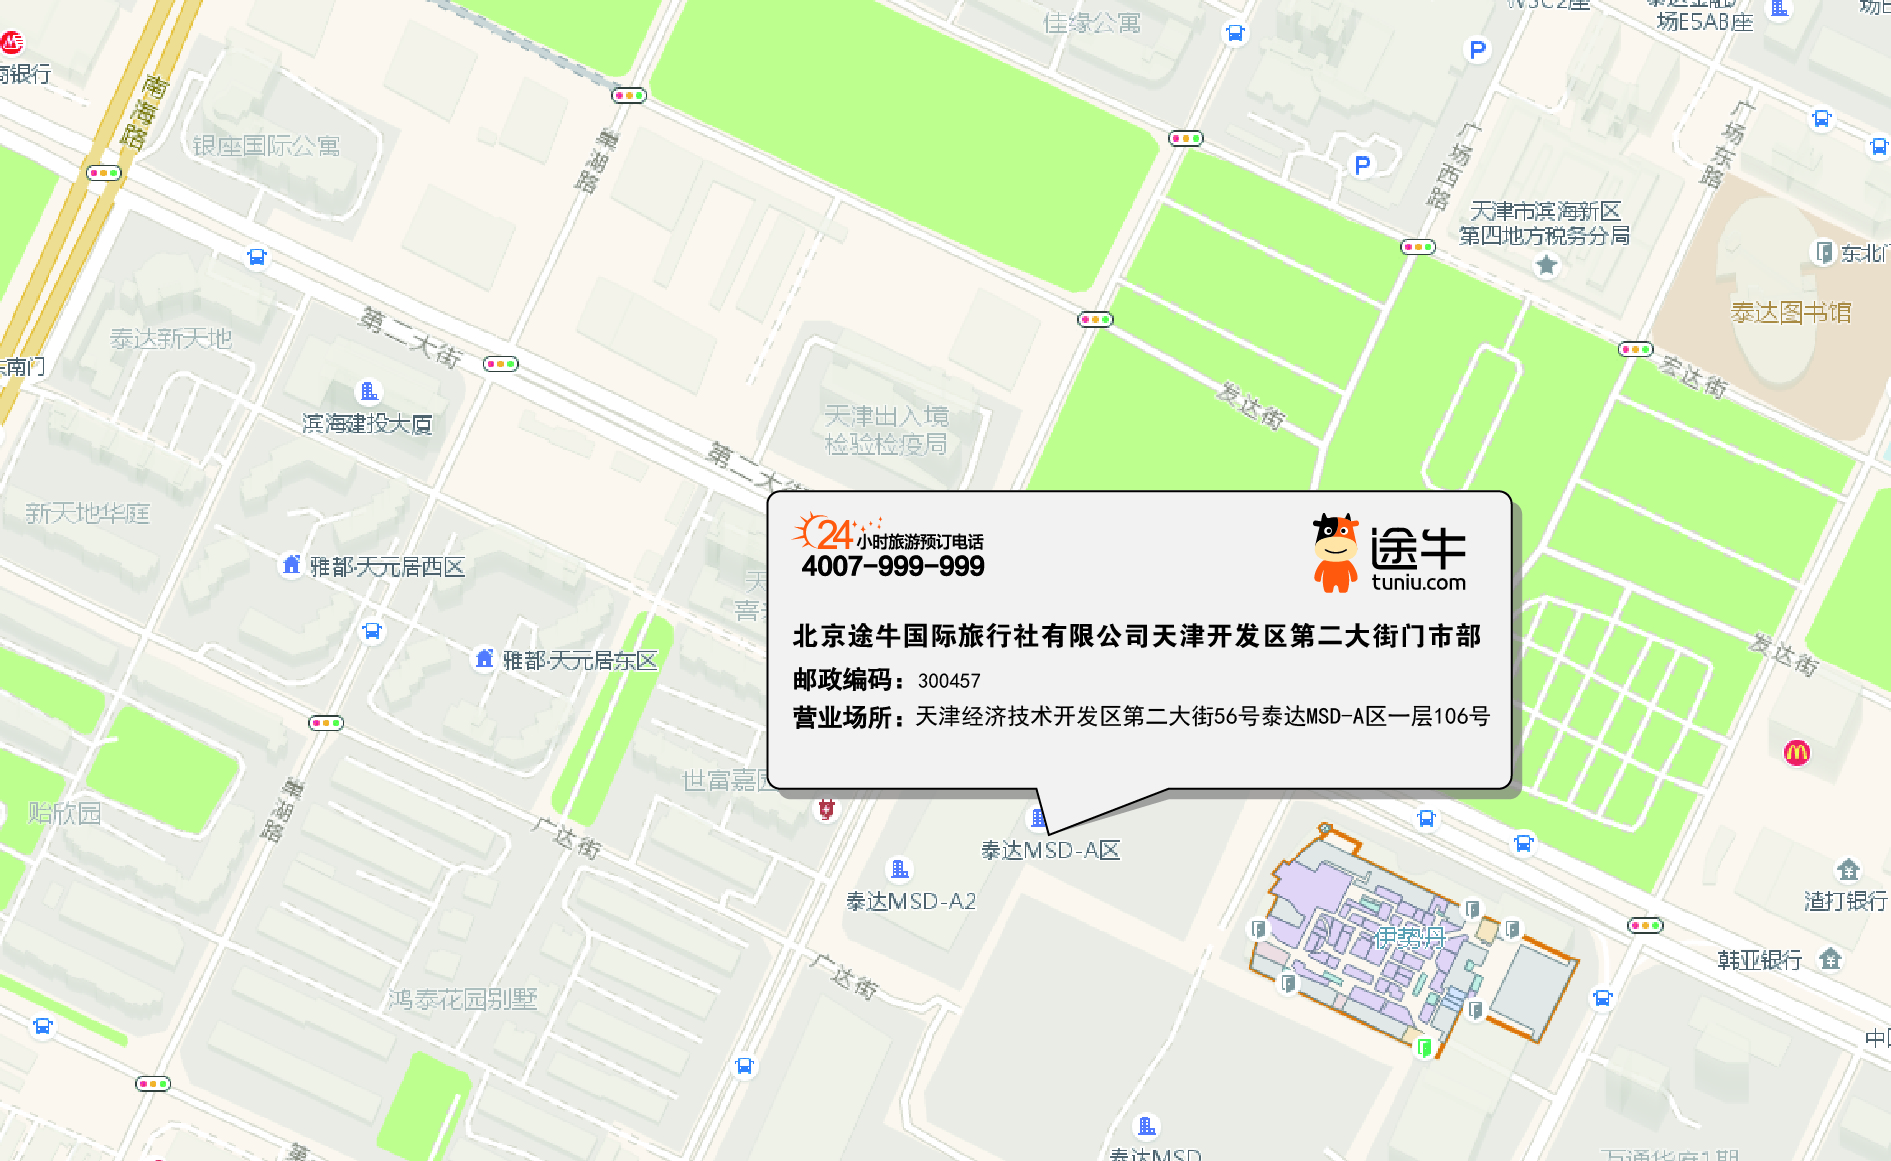 北京途牛国际旅行社有限公司天津开发区第二大街门市部地图